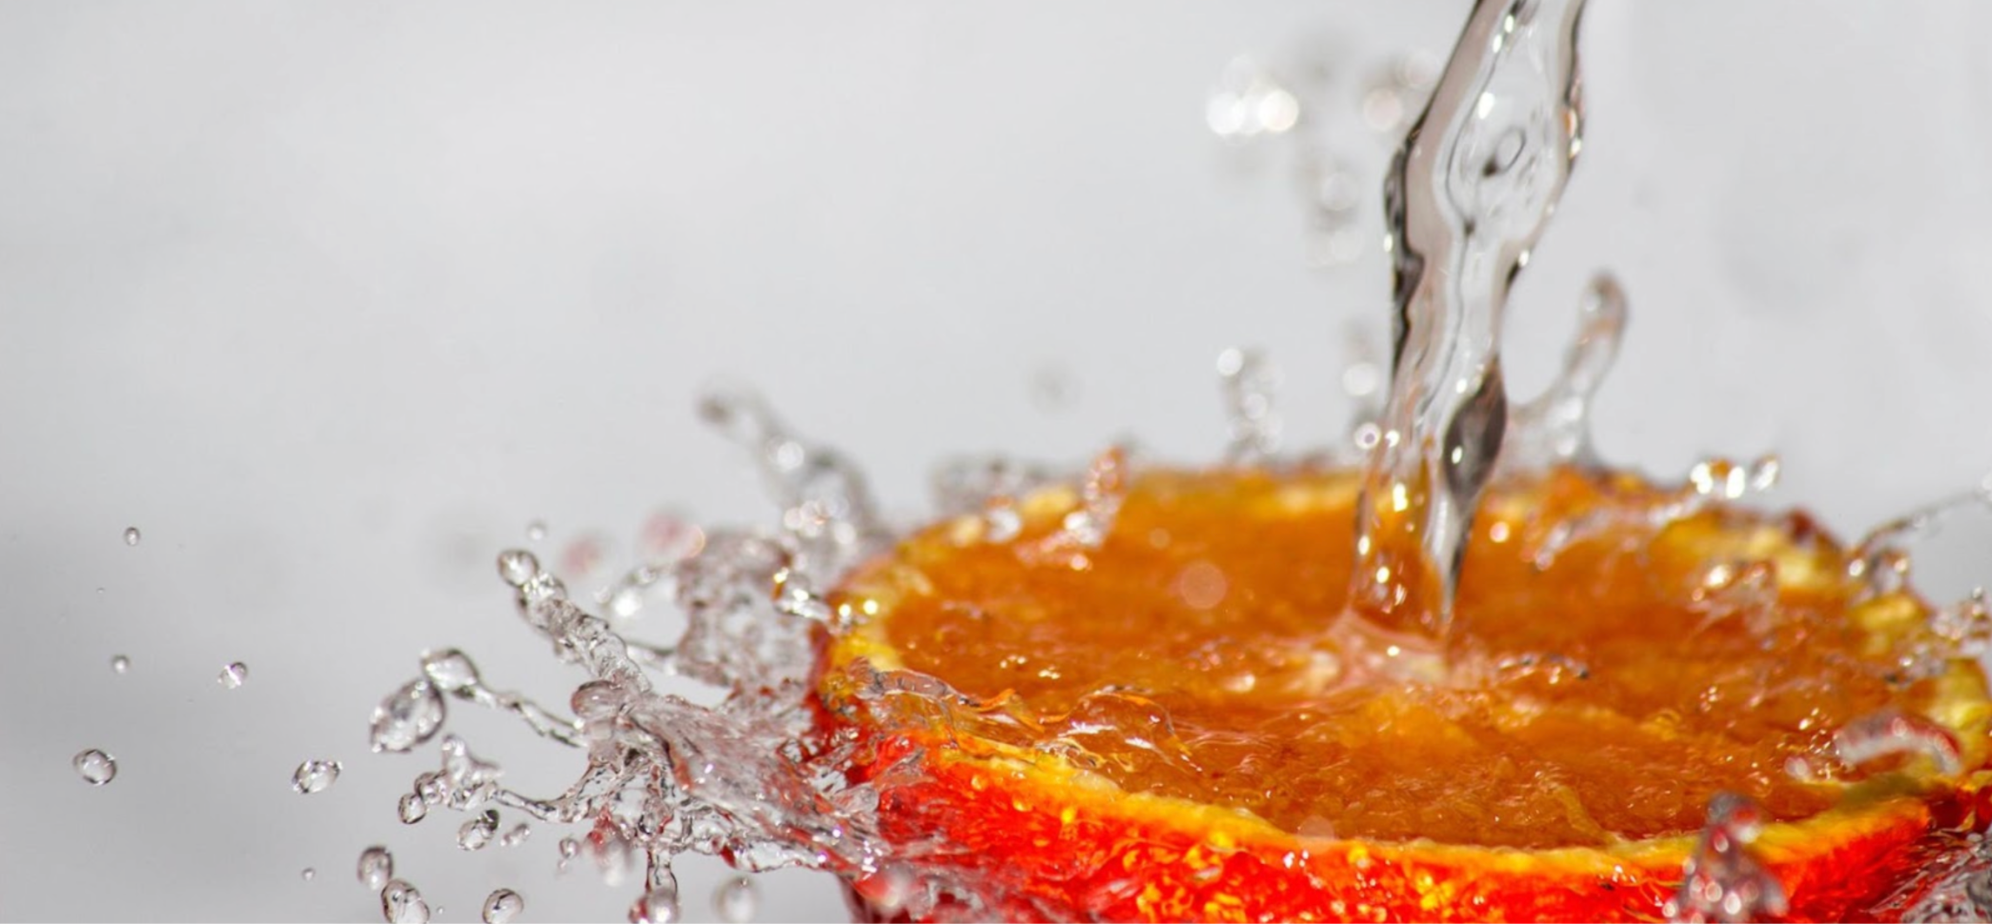 Freshwater splashing down on an orange for vitamin C